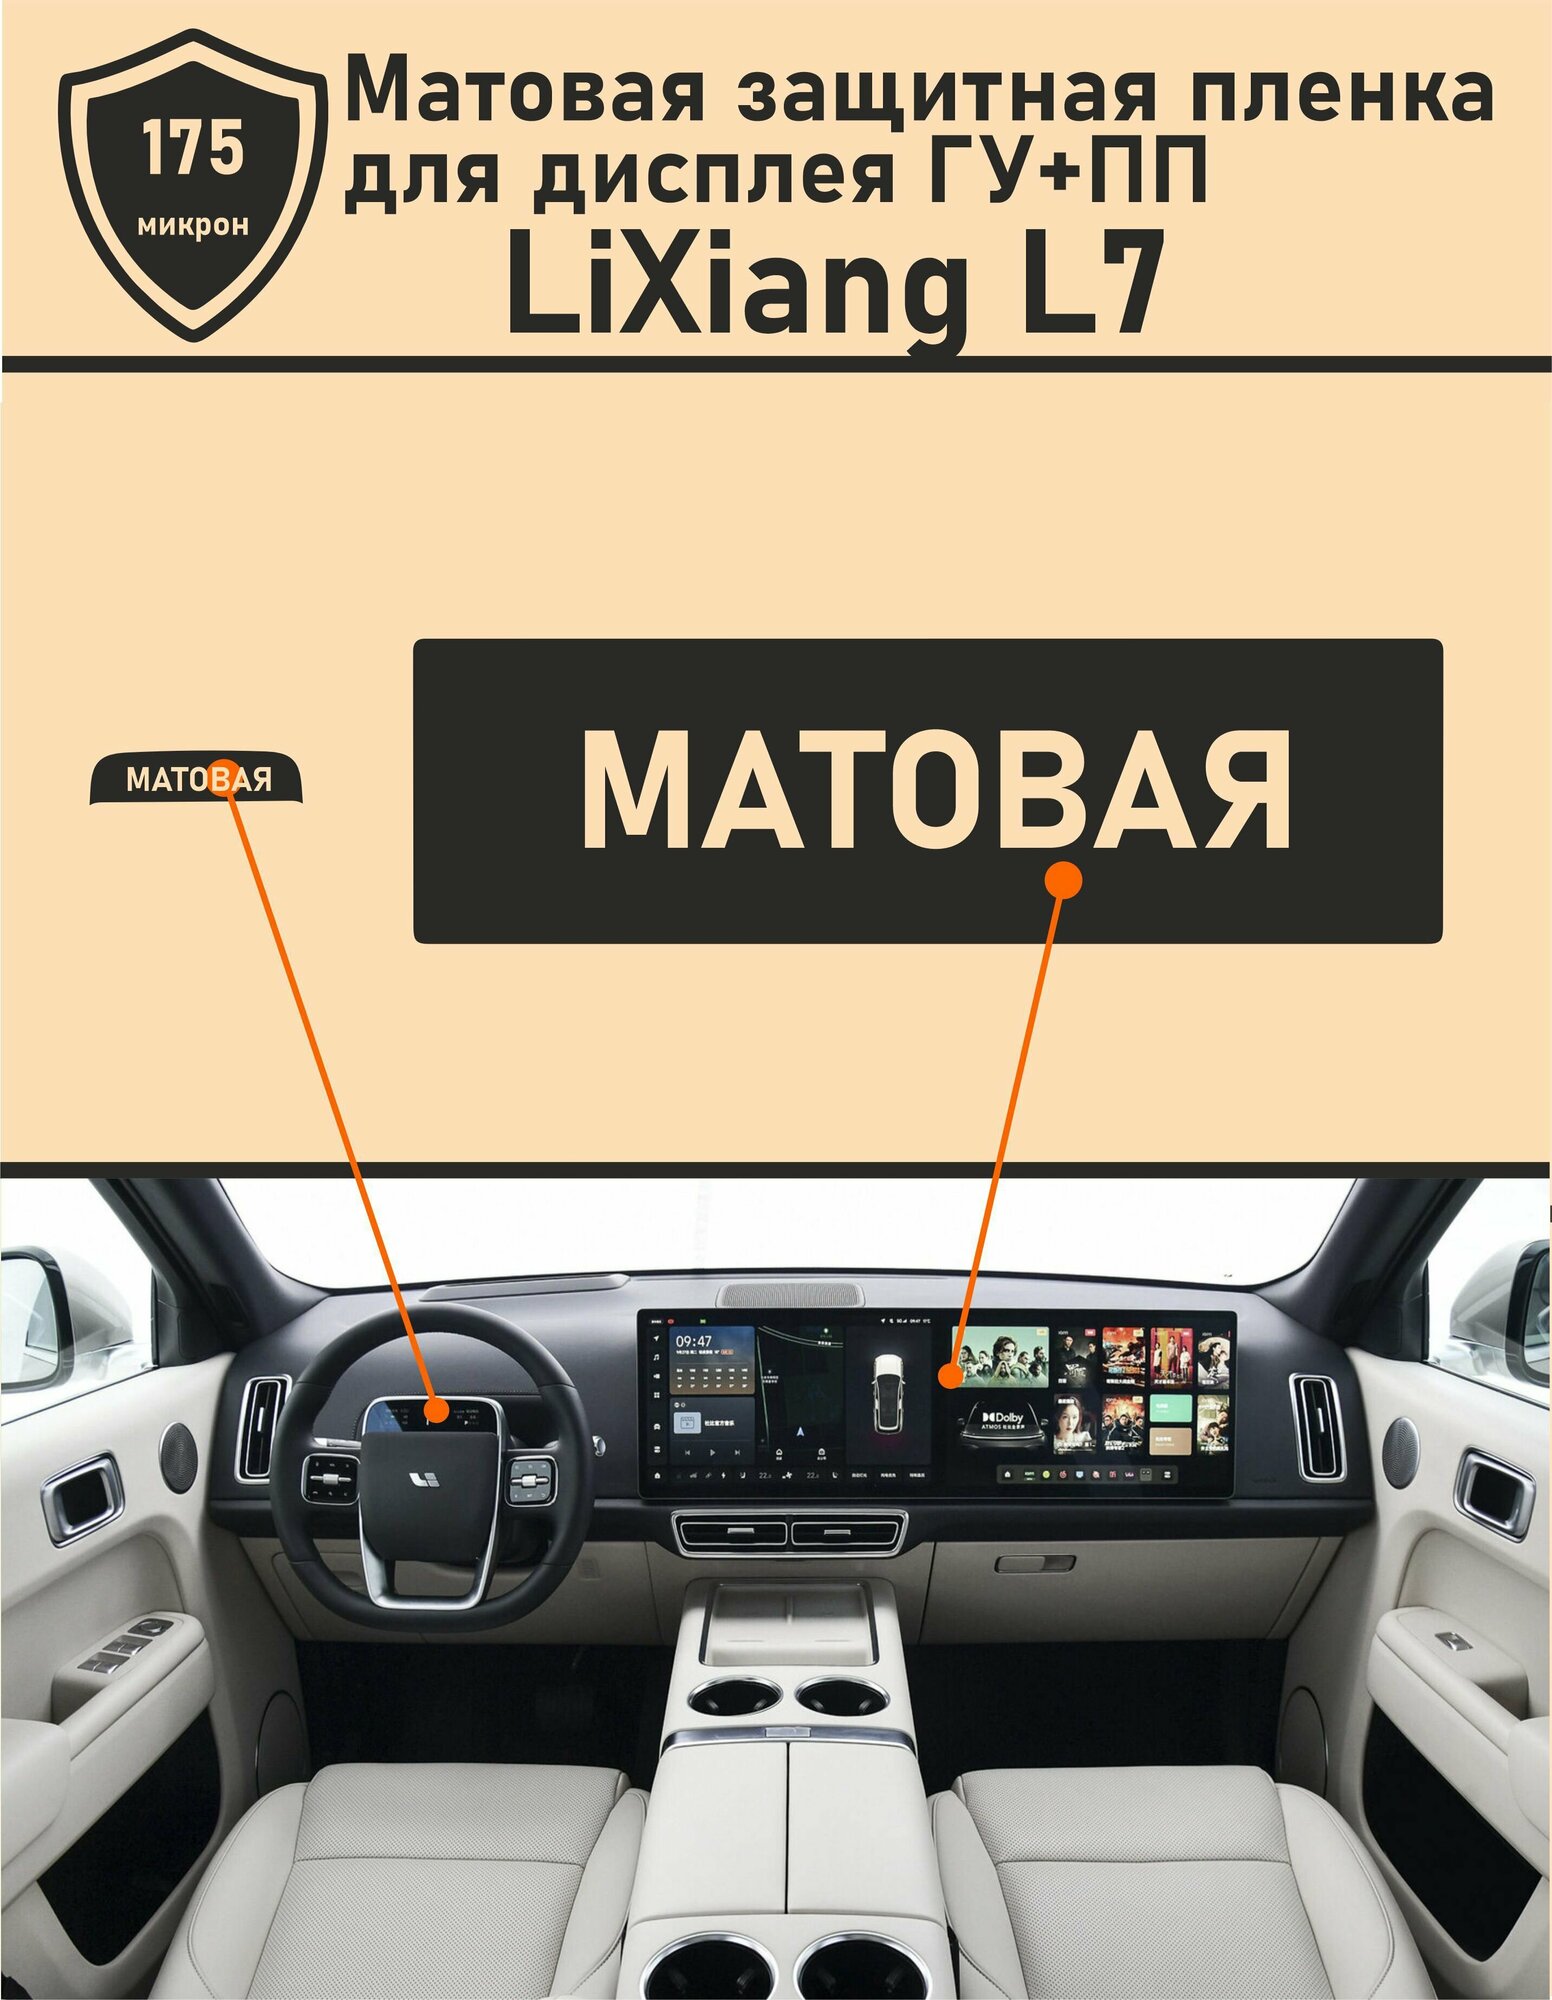 LiXiang L7/Матовая защитная пленка для дисплея ГУ + ПП